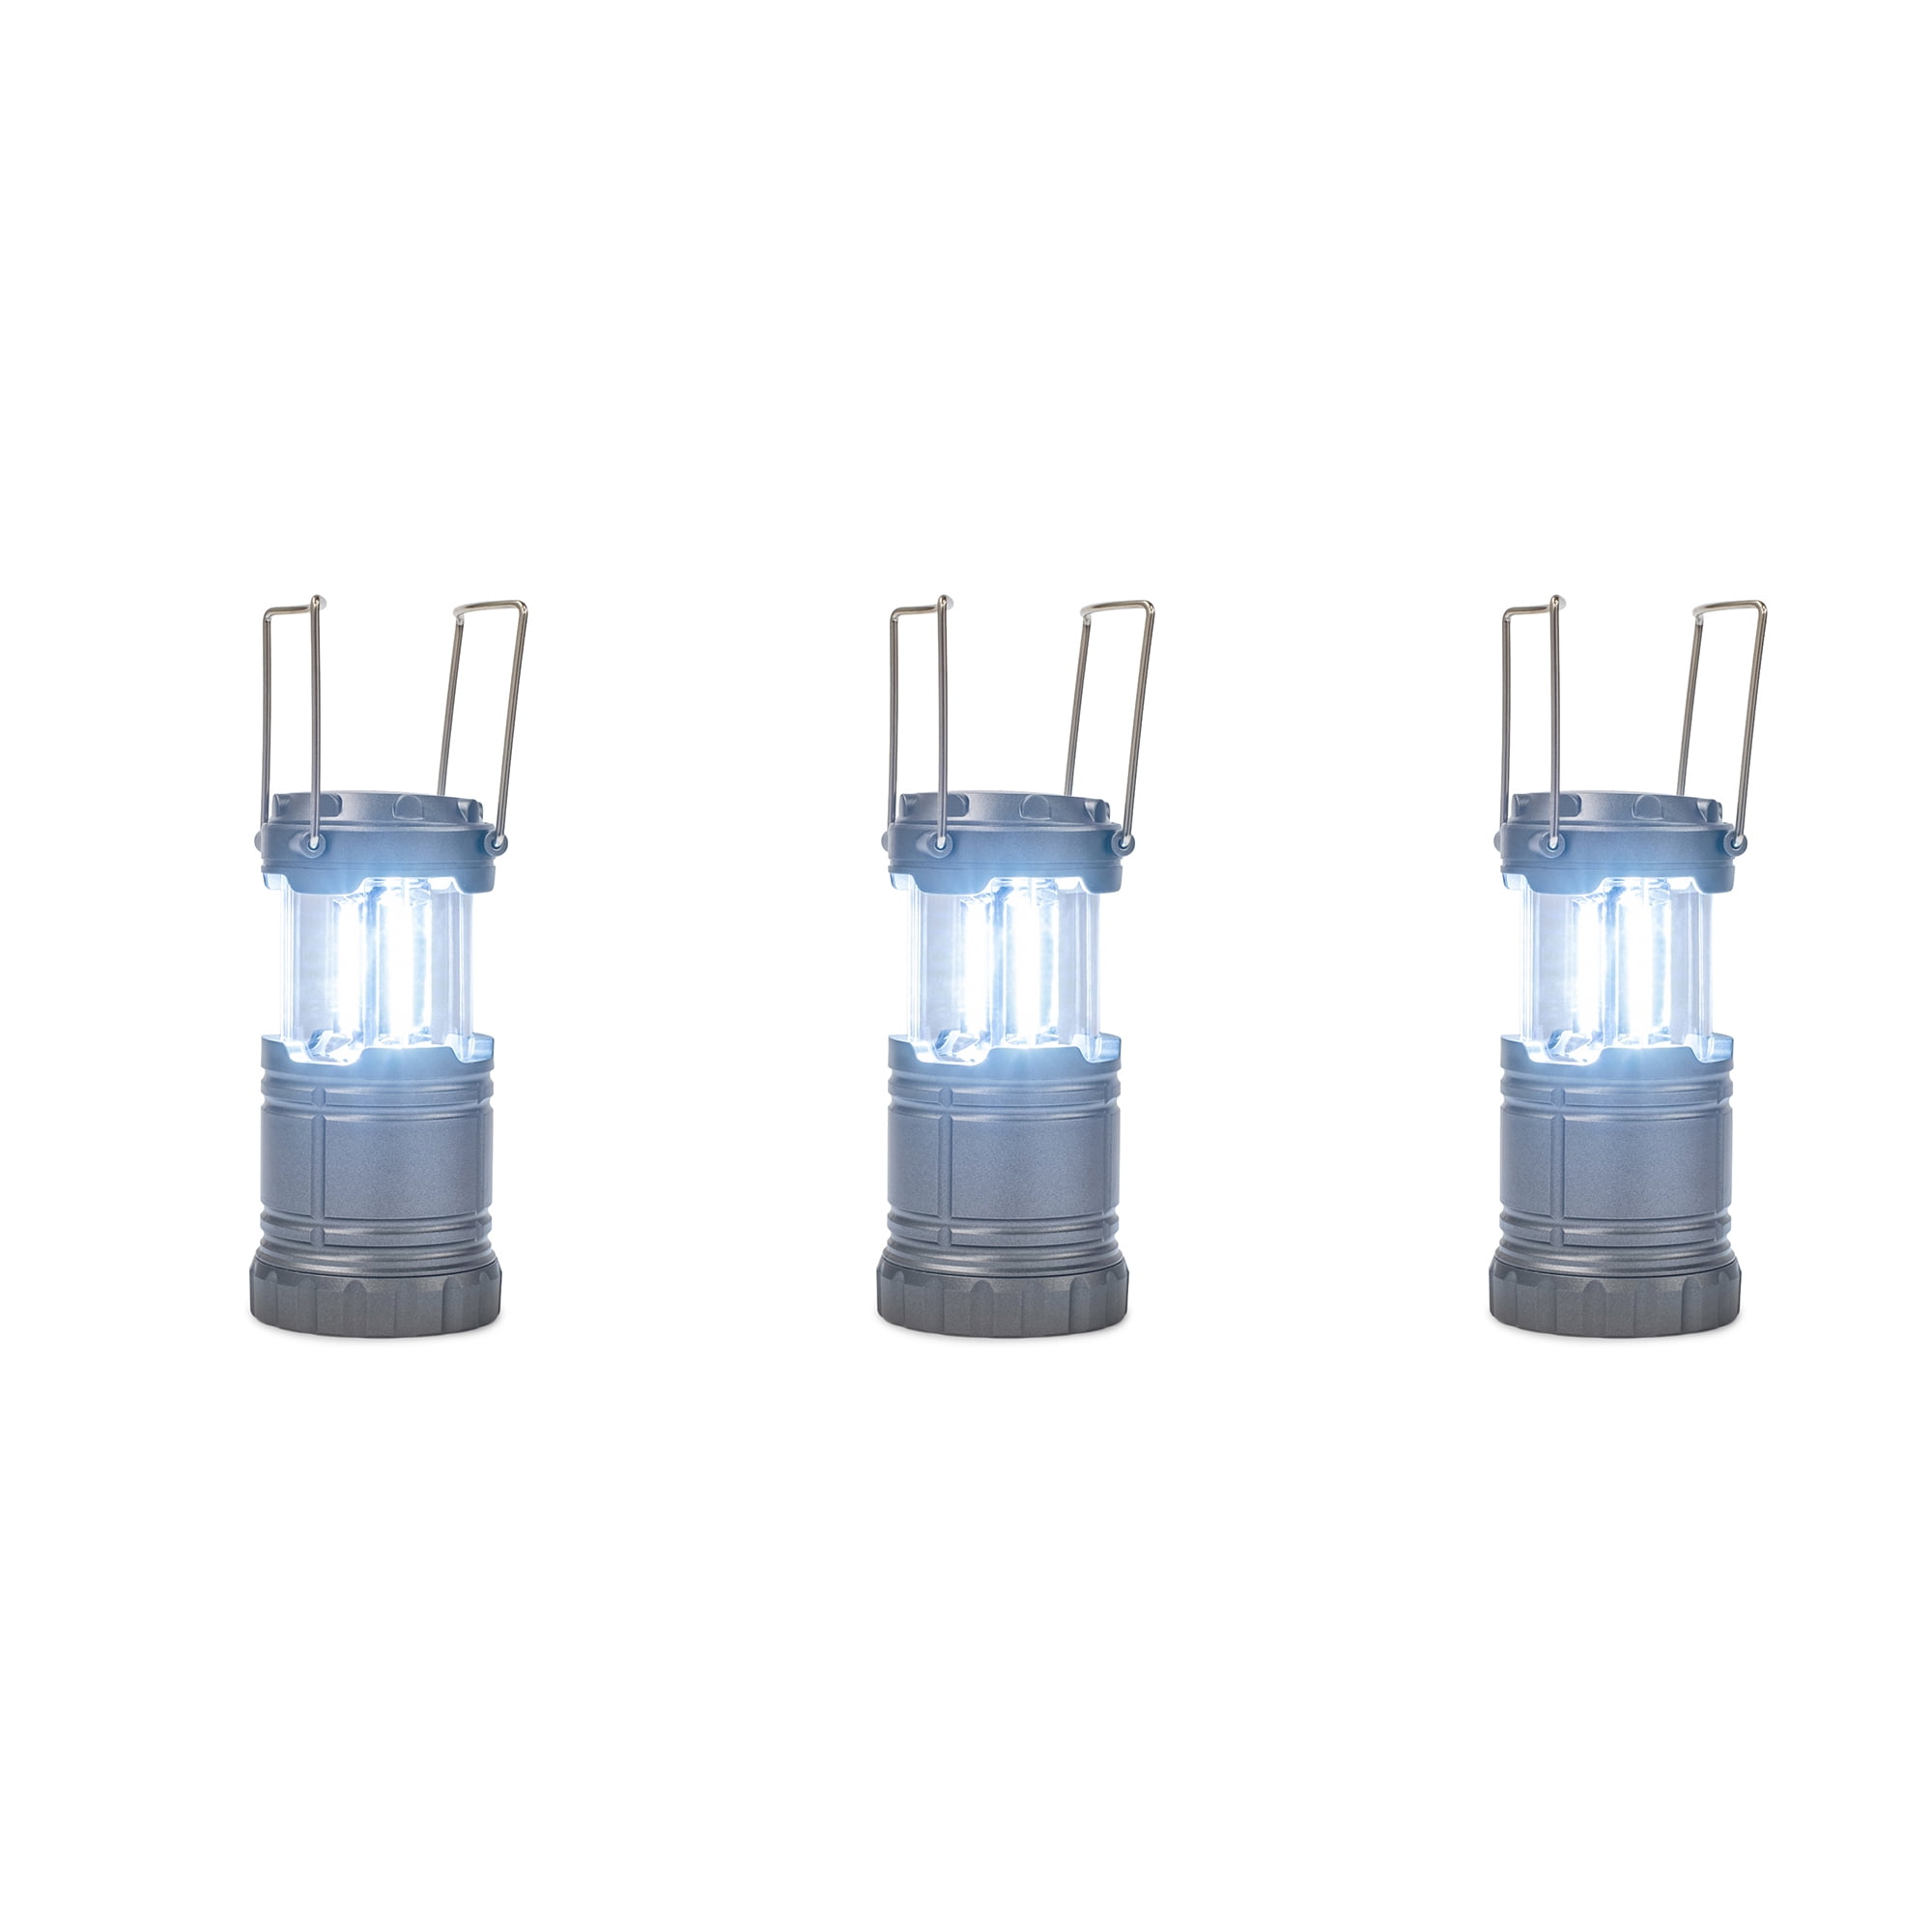 Wilcor 6 LED 60 Lumen Mini Collapsible Lantern